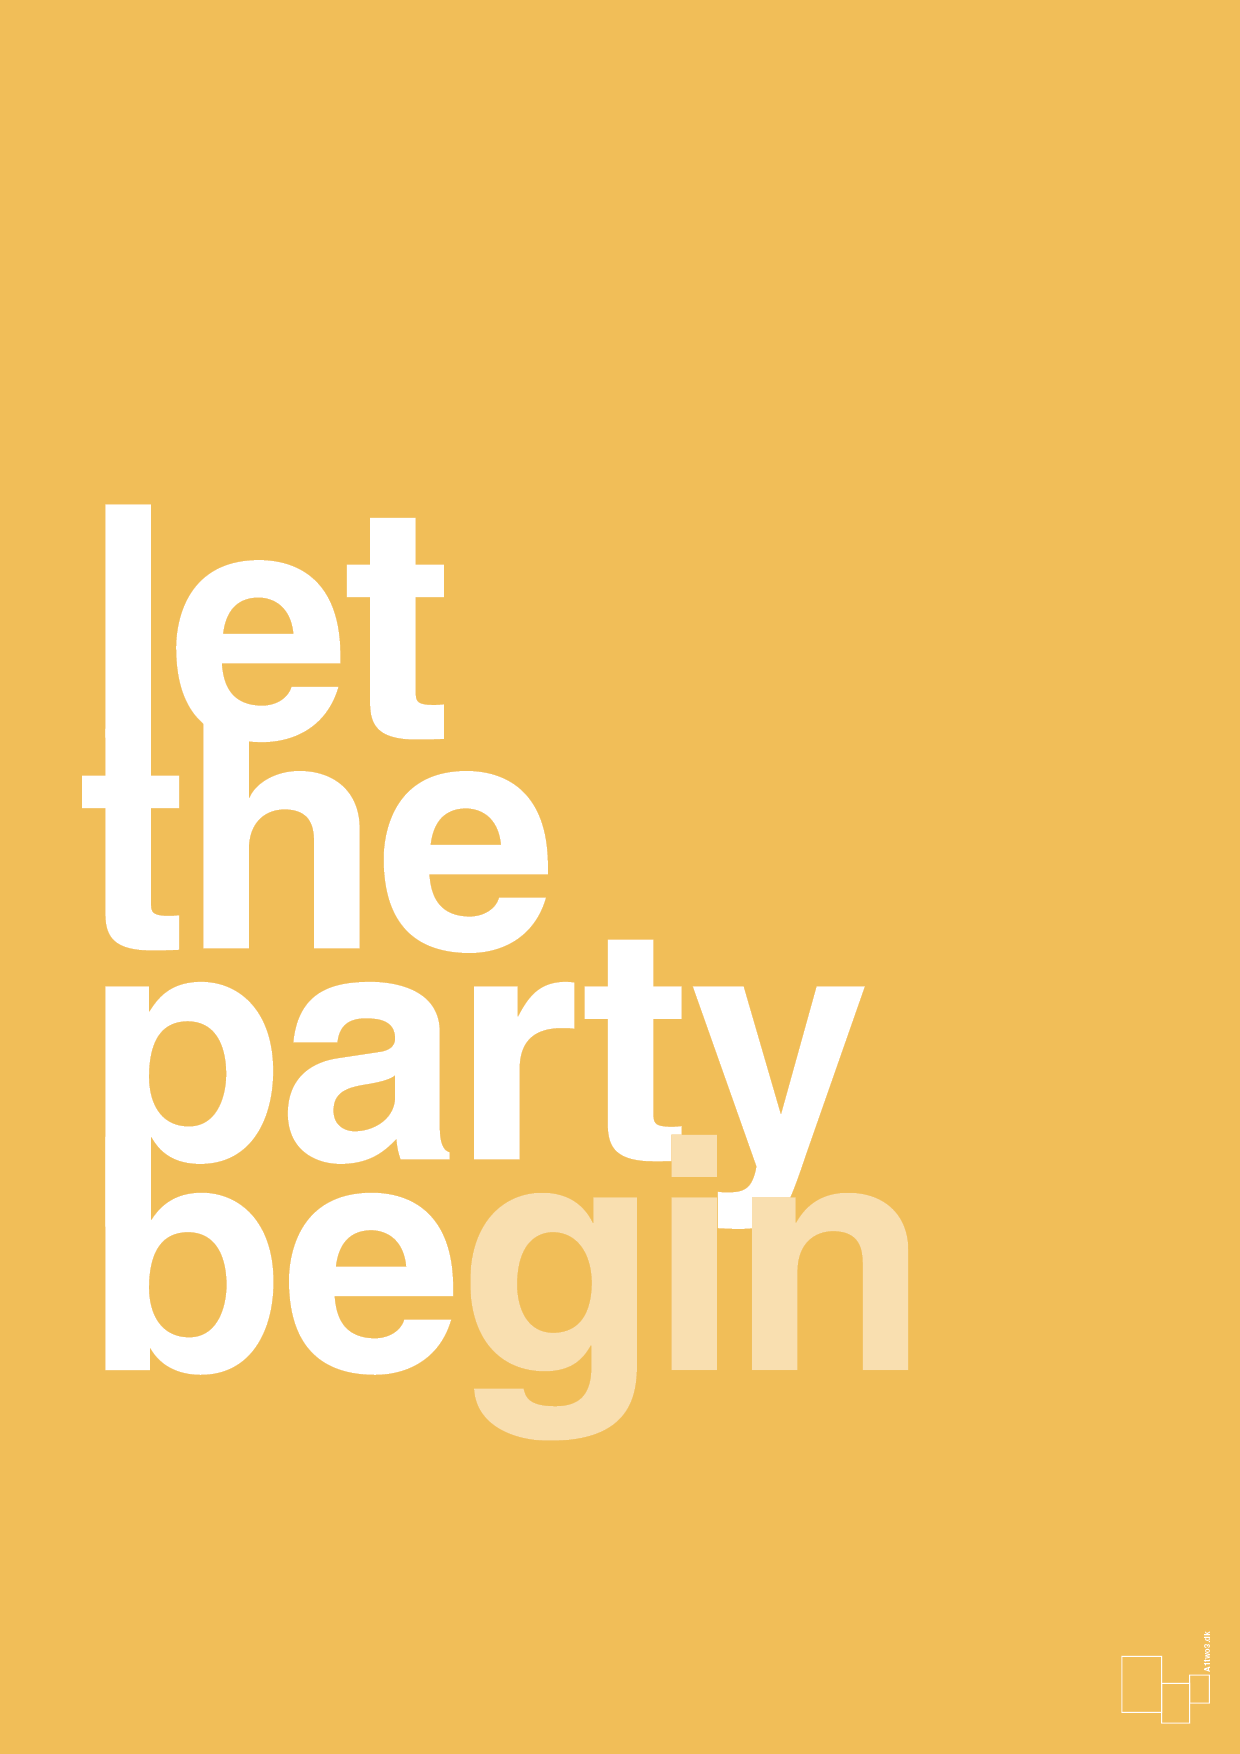 let the party begin - Plakat med Ordsprog i Honeycomb